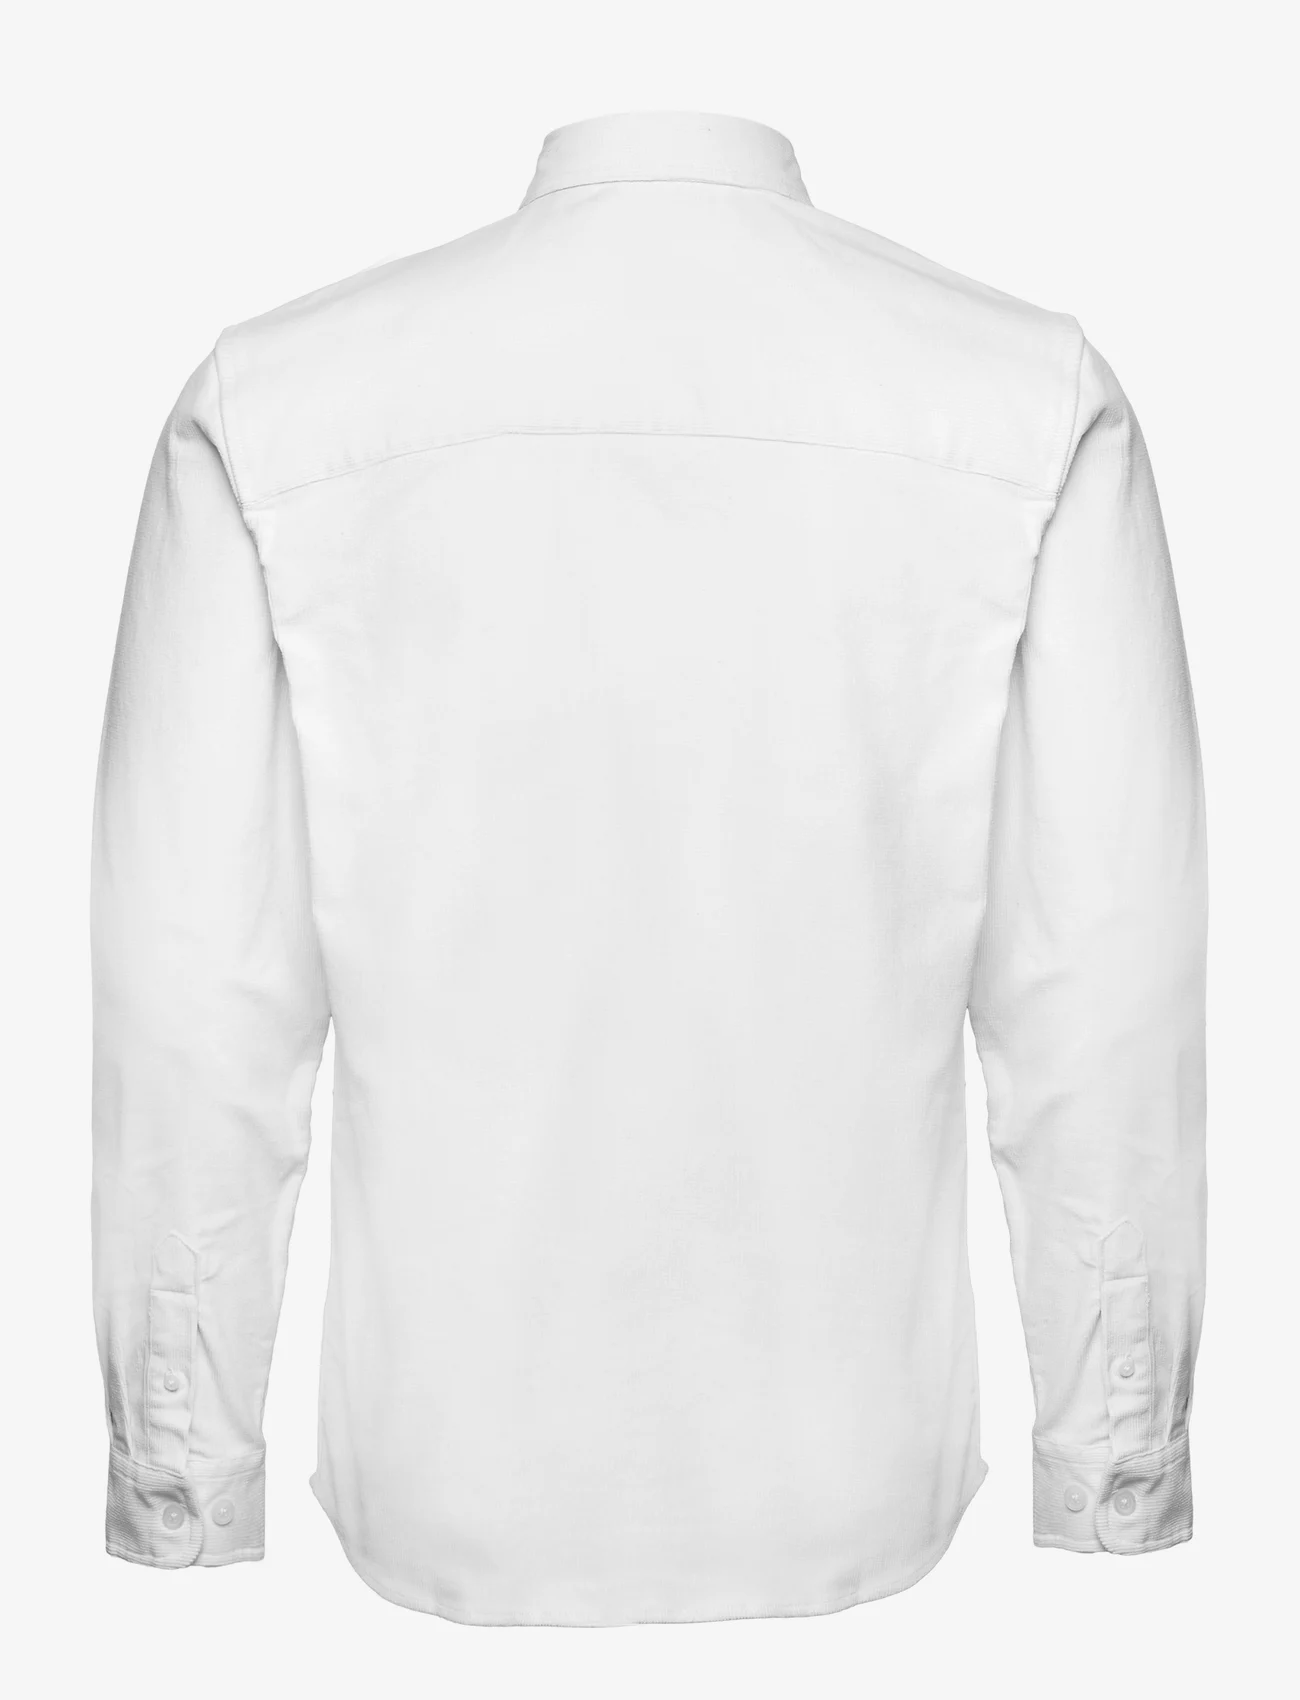 Redefined Rebel - RRPark Shirt - manchesterskjortor - white - 1